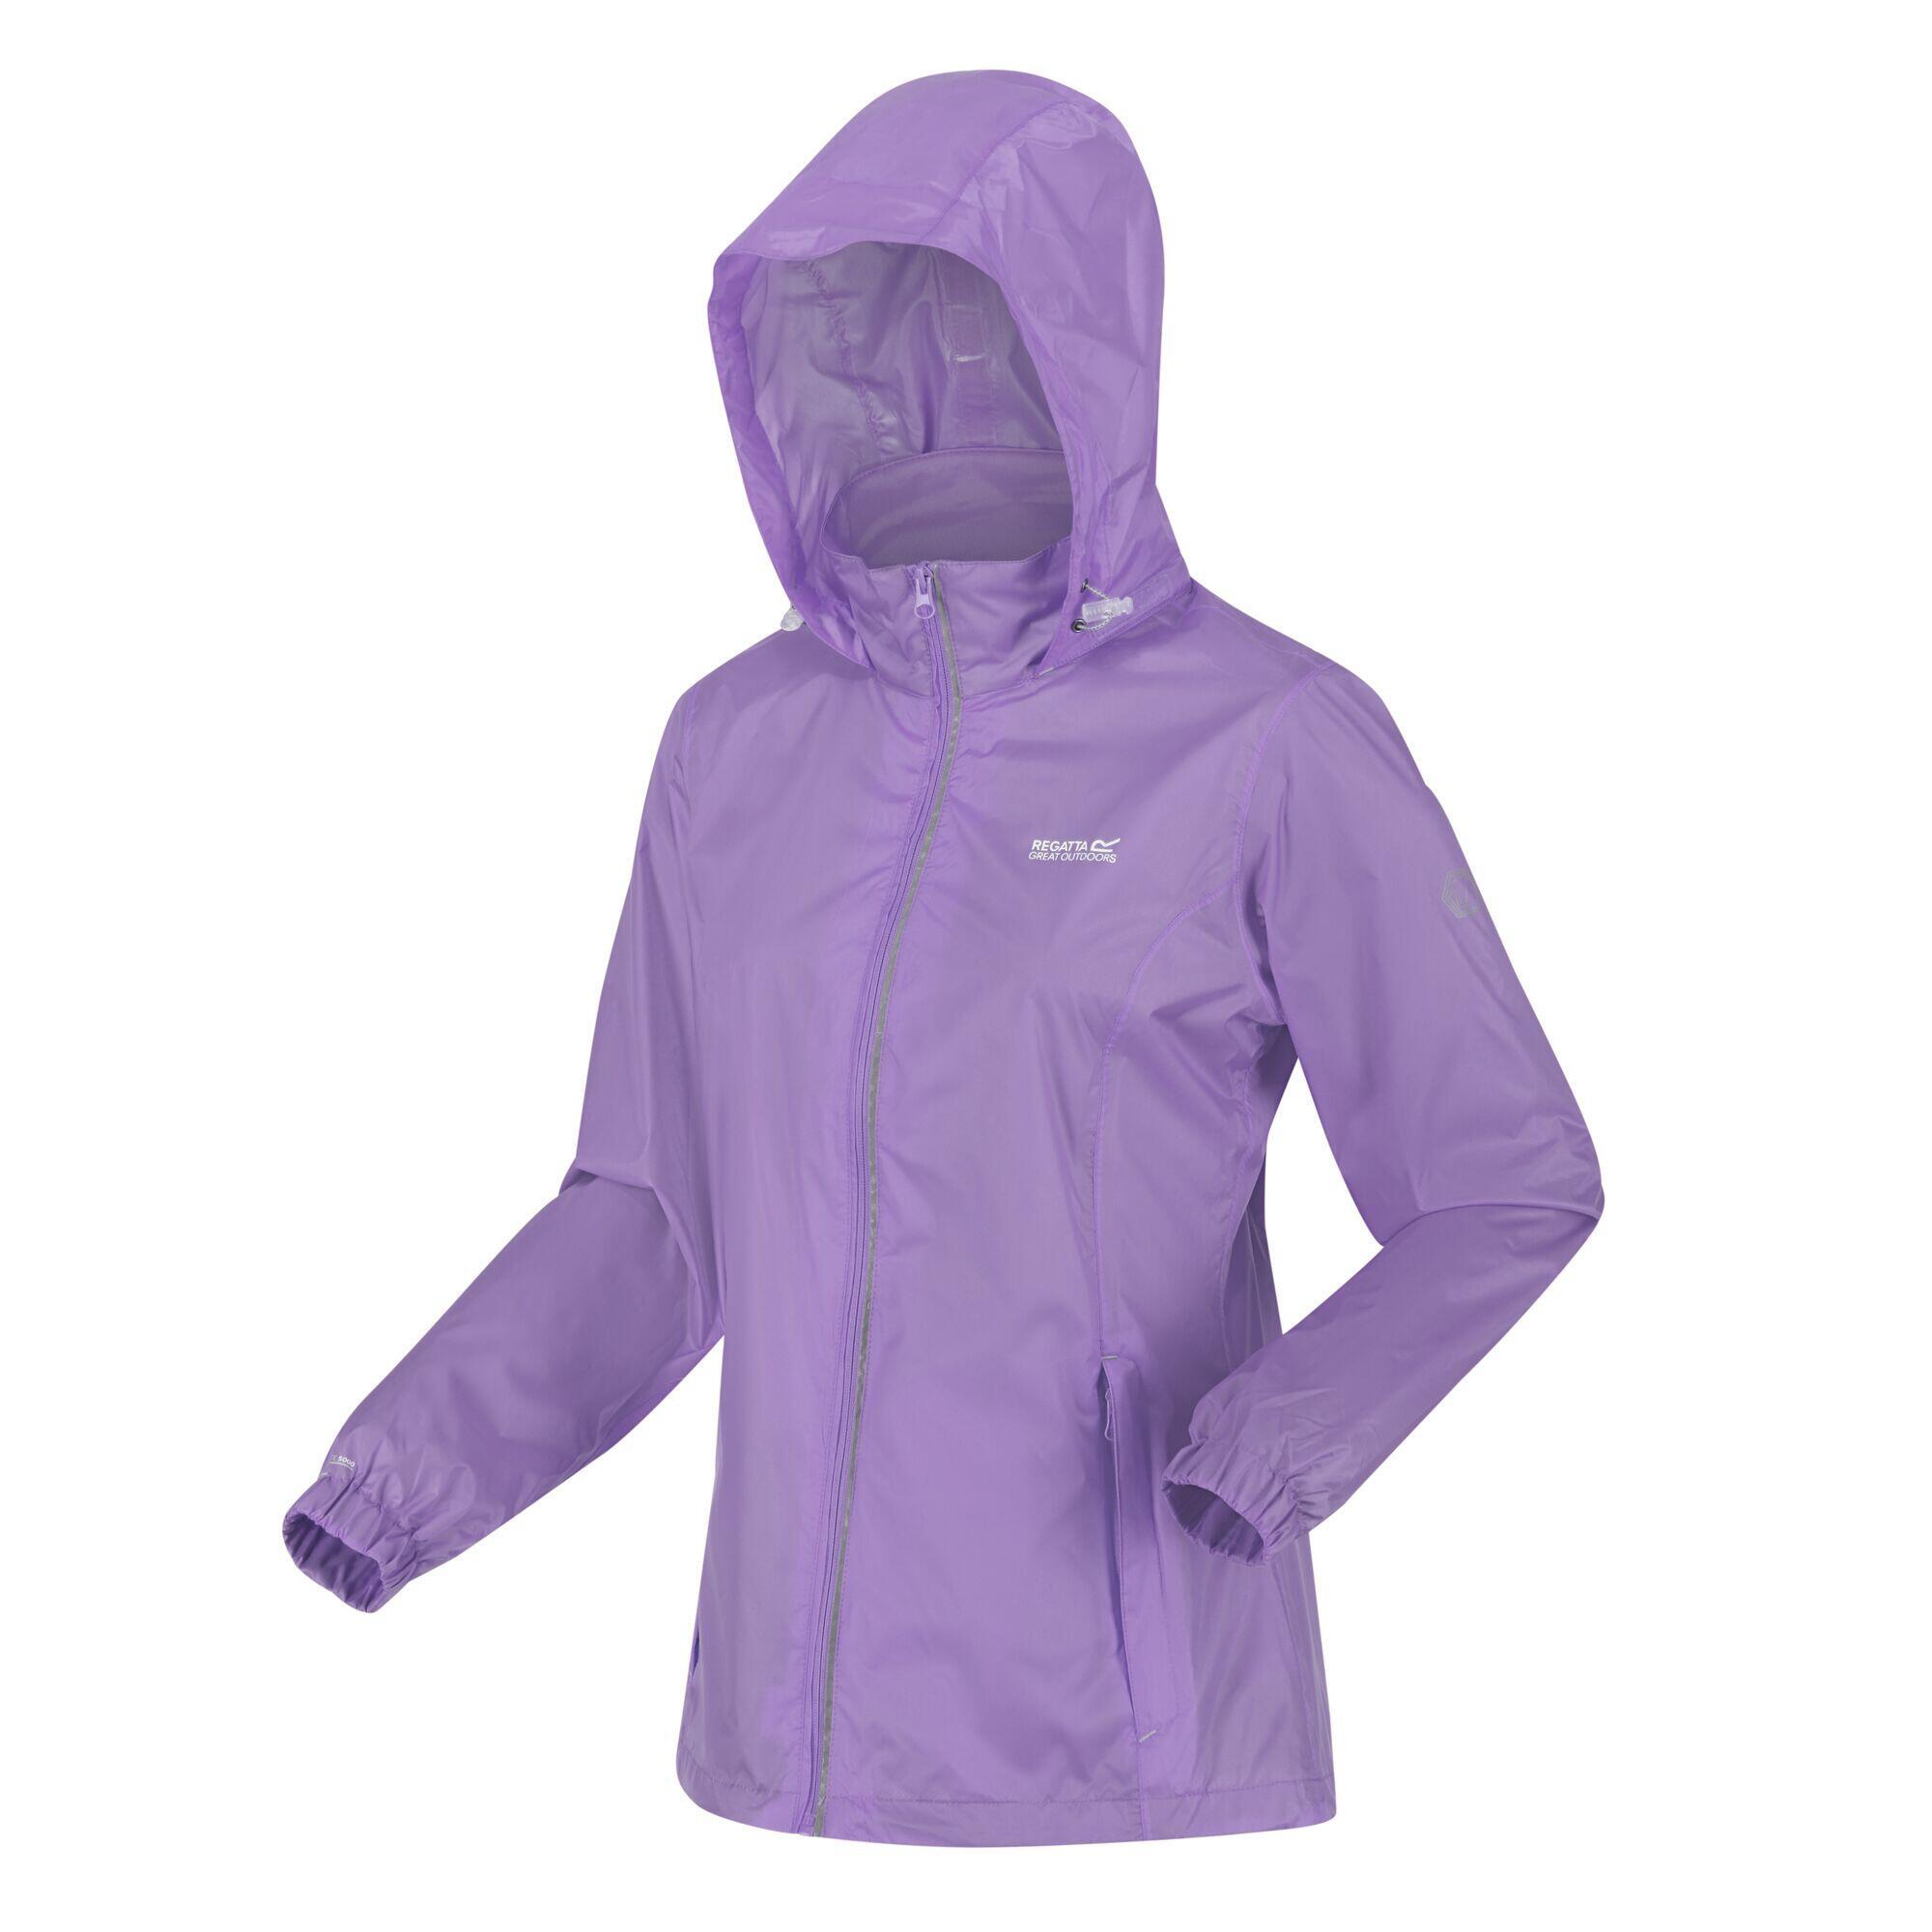 Куртка Regatta Corinne IV легкая непромокаемая, фиолетовый